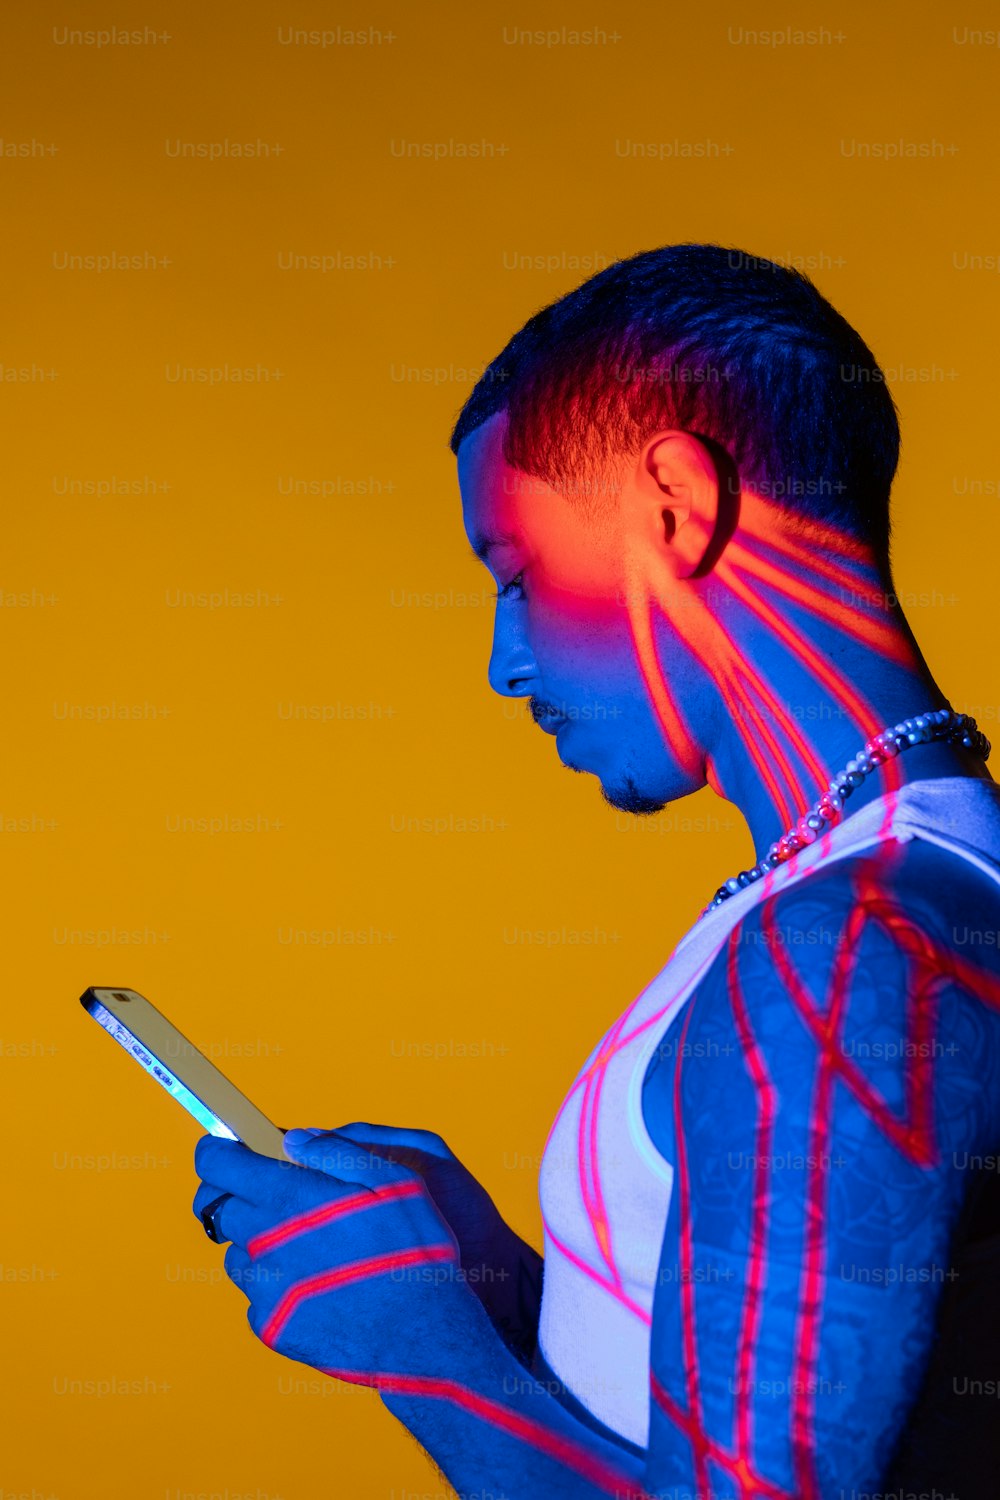 Una persona con una pintura corporal de neón sosteniendo un teléfono celular